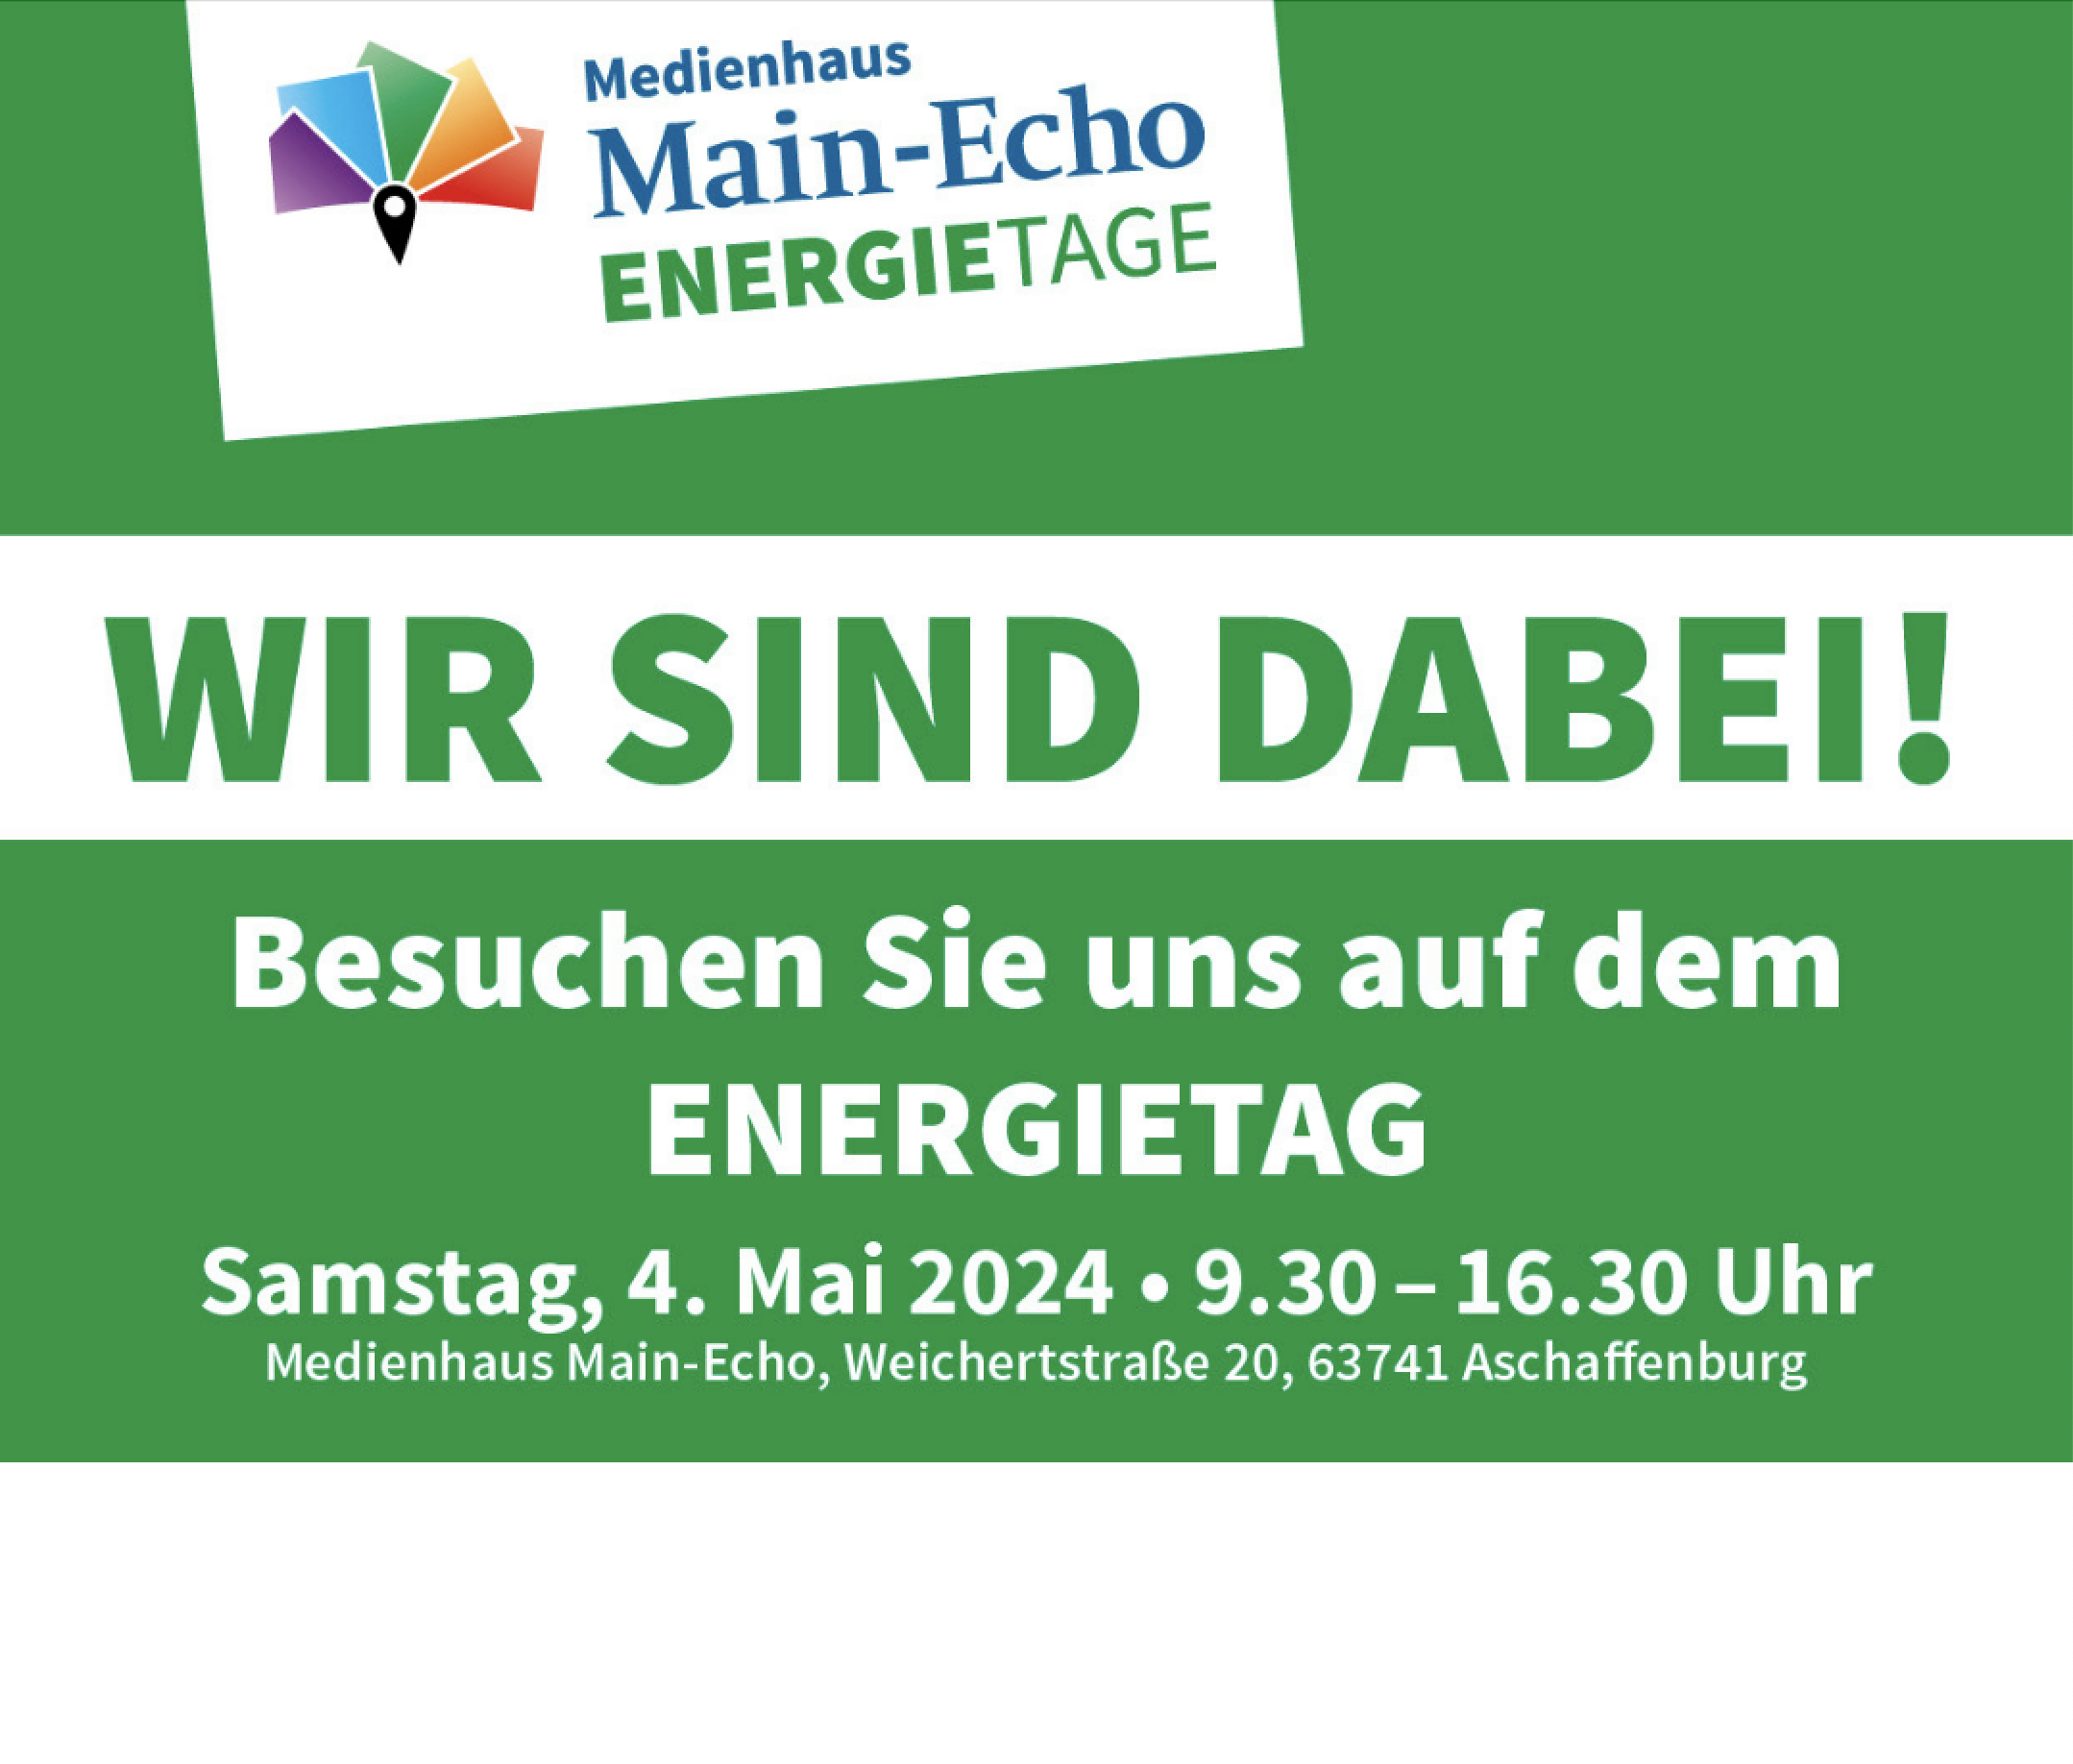 Grüne Anzeige der Main Echo Energietage mit Wir sind dabei.